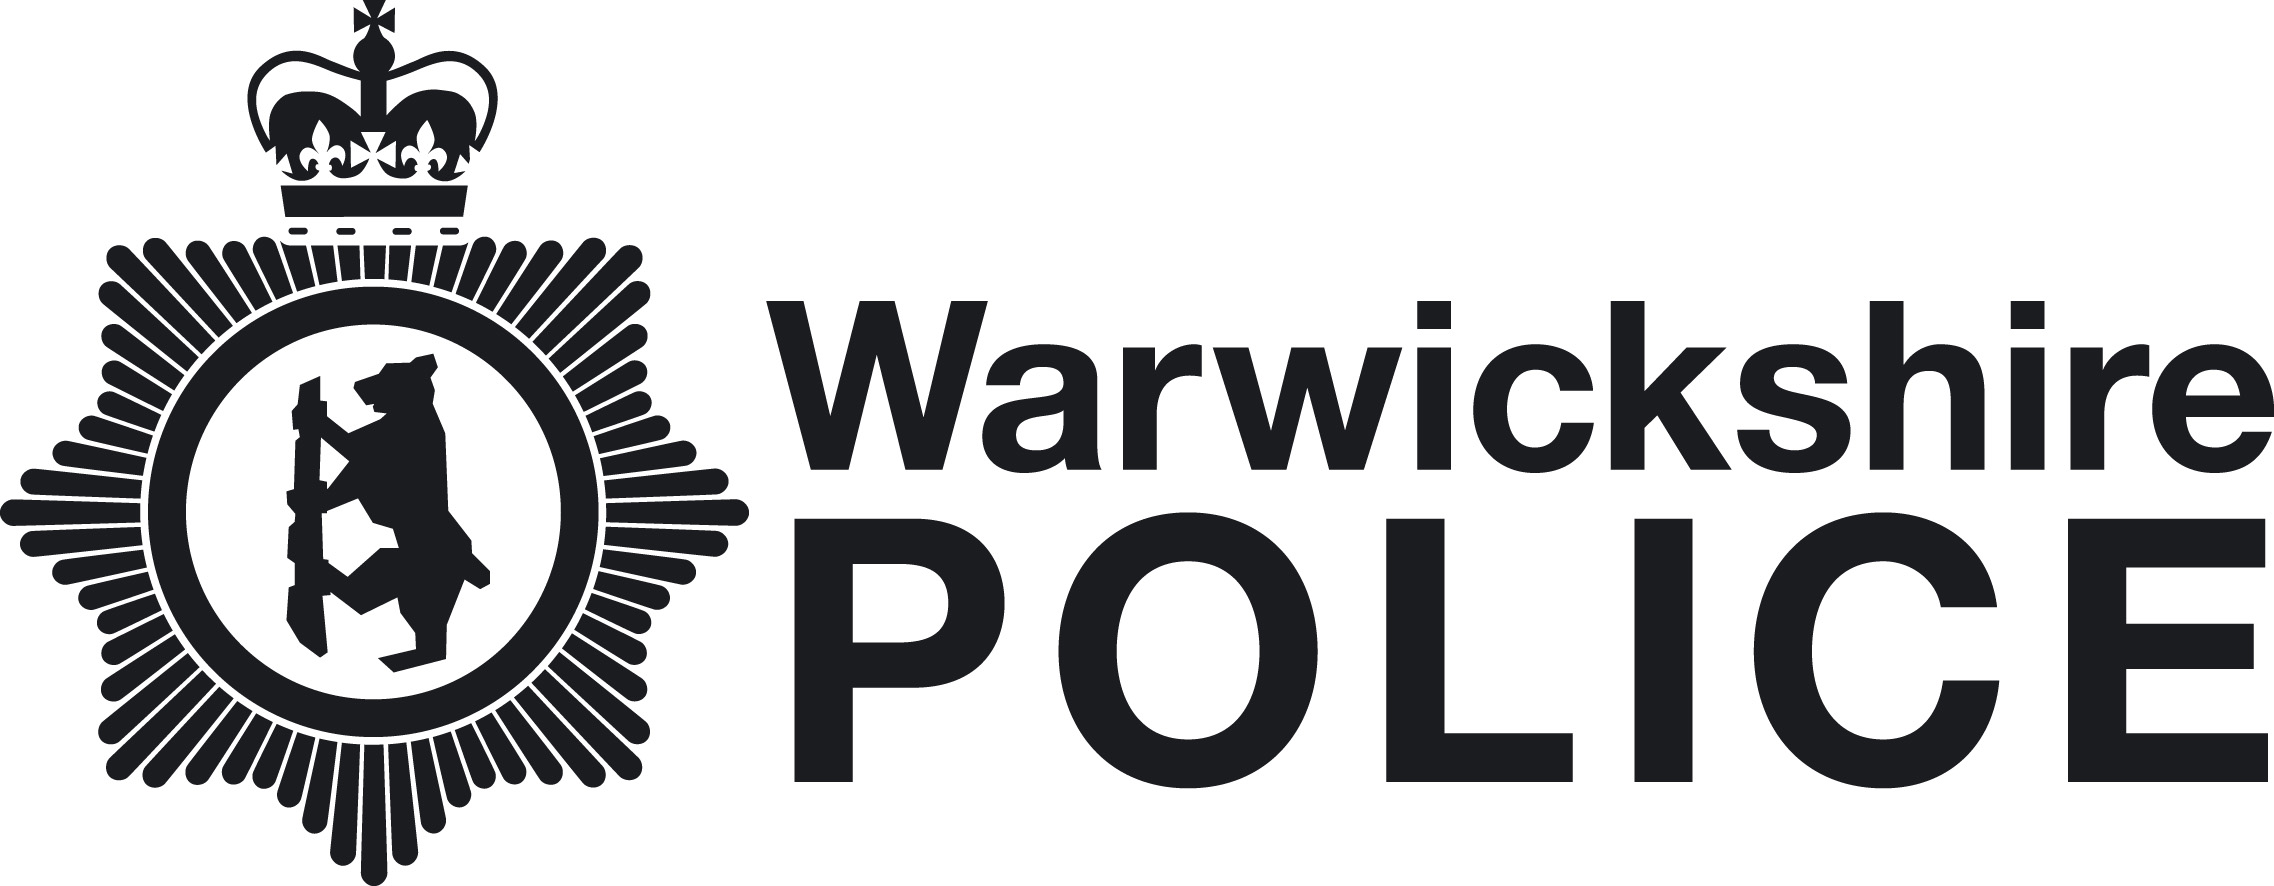 warwick-police-logo